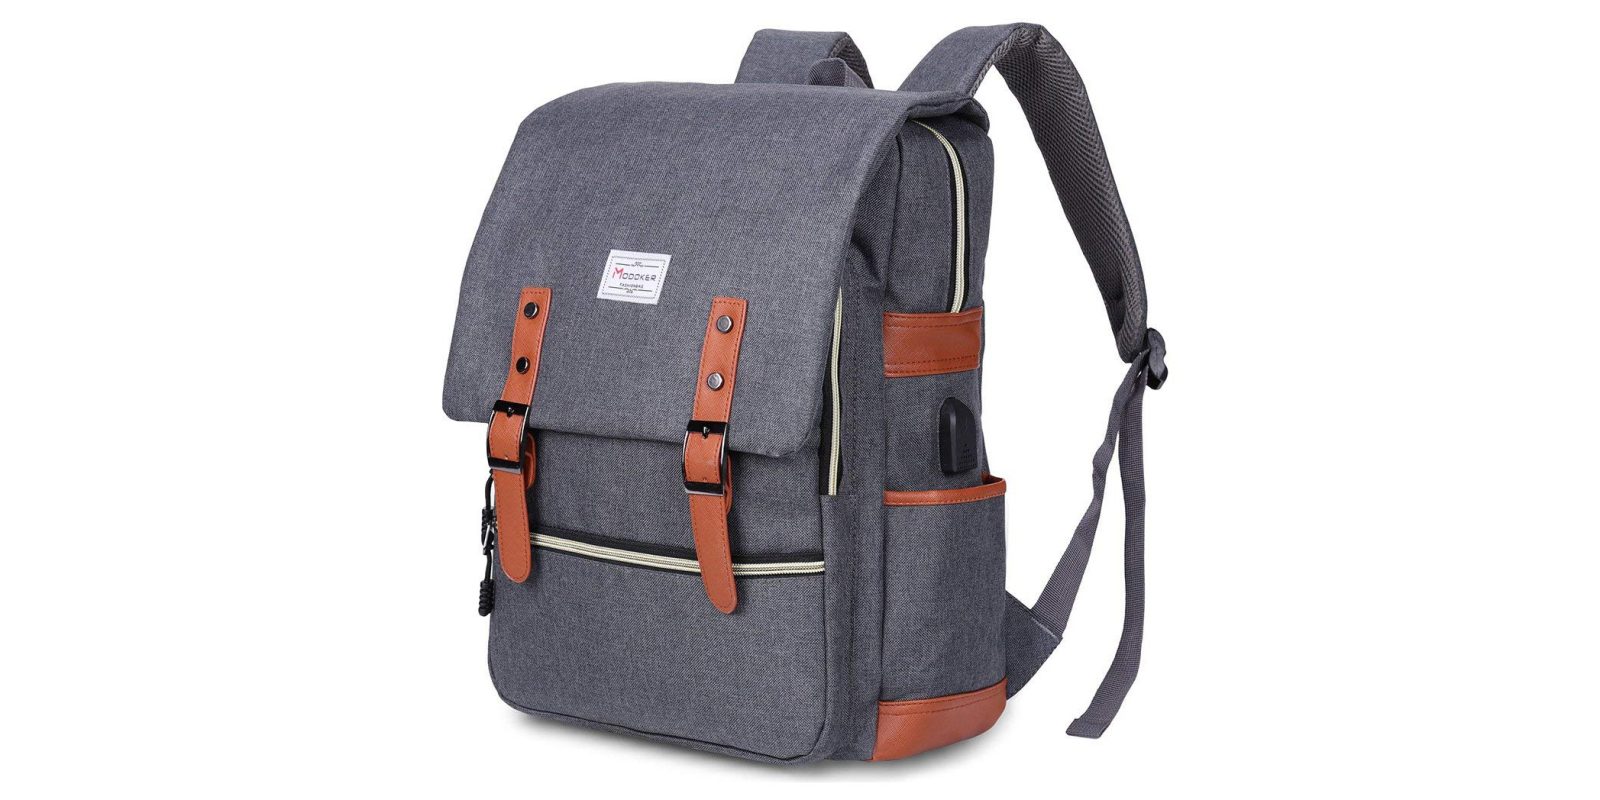 modoker-macbook-backpack.jpg